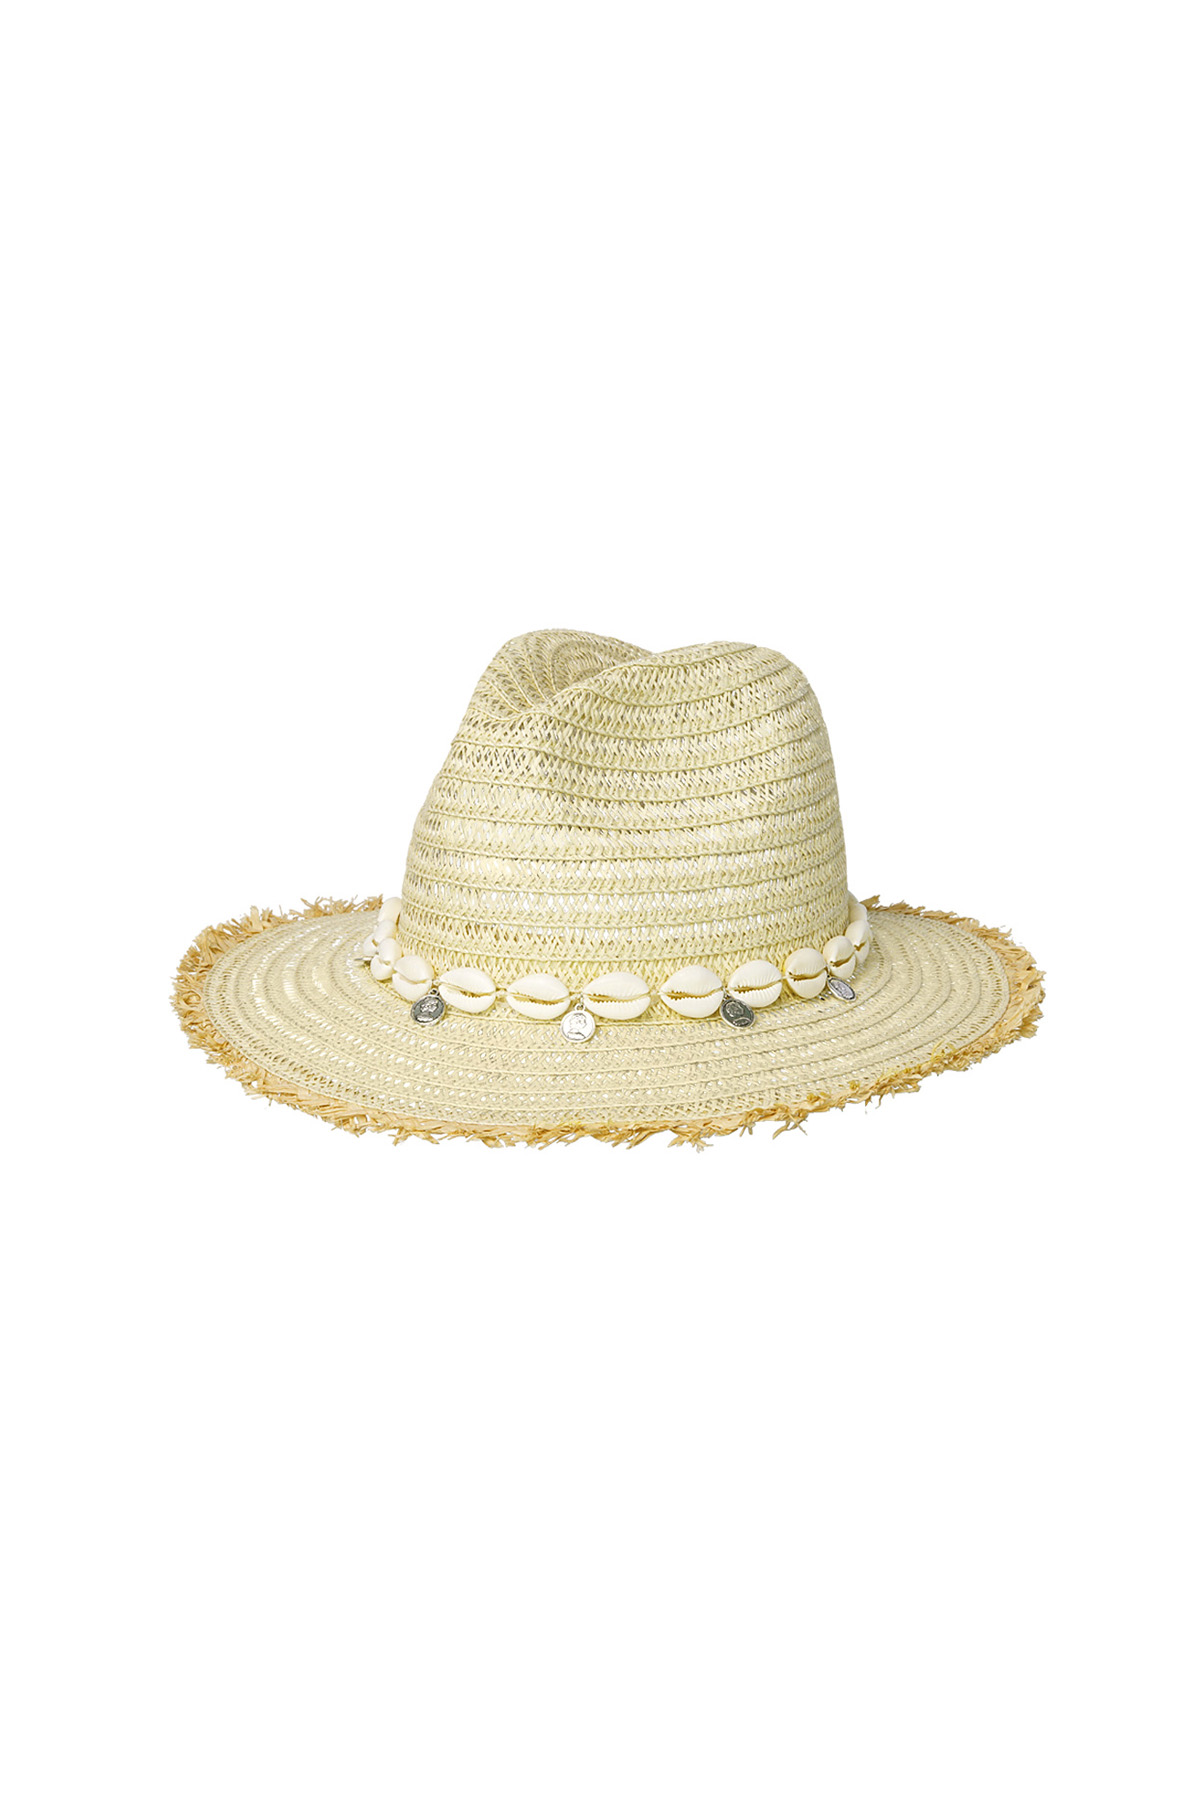 Conchiglie per cappelli estivi - Carta biancastra